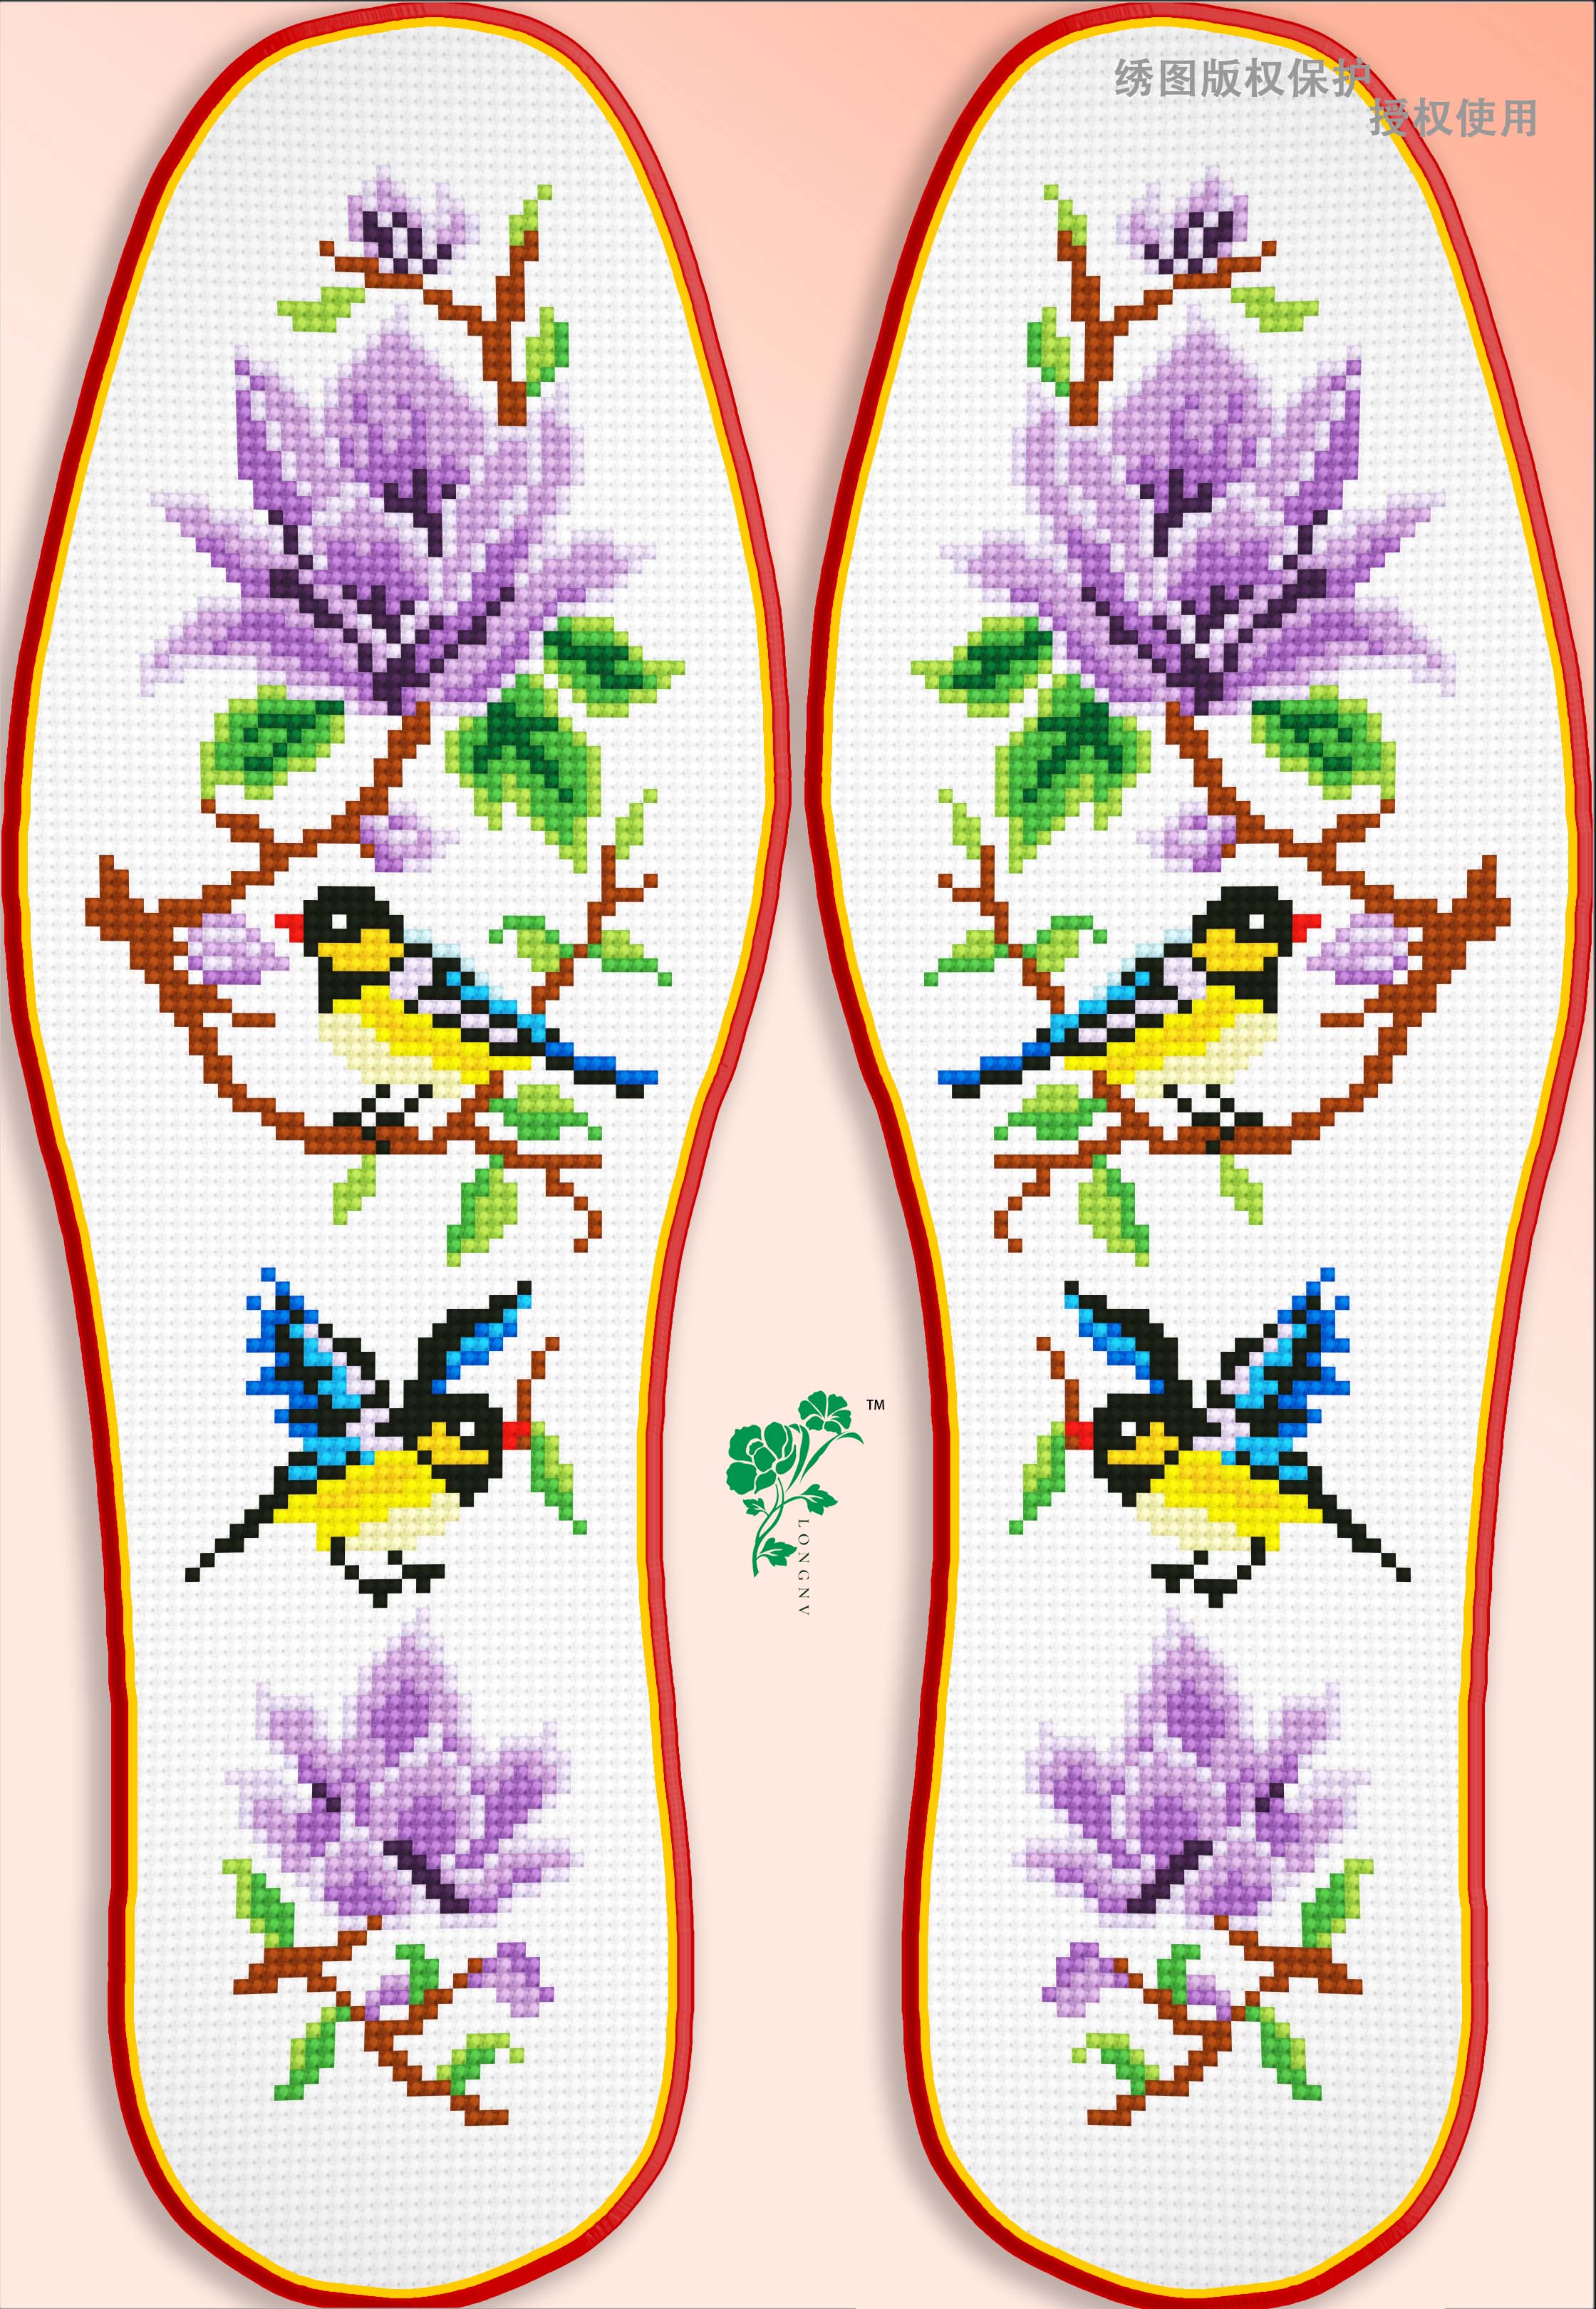 六色春鸟,七彩玉兰,十字绣鞋垫图样欣赏